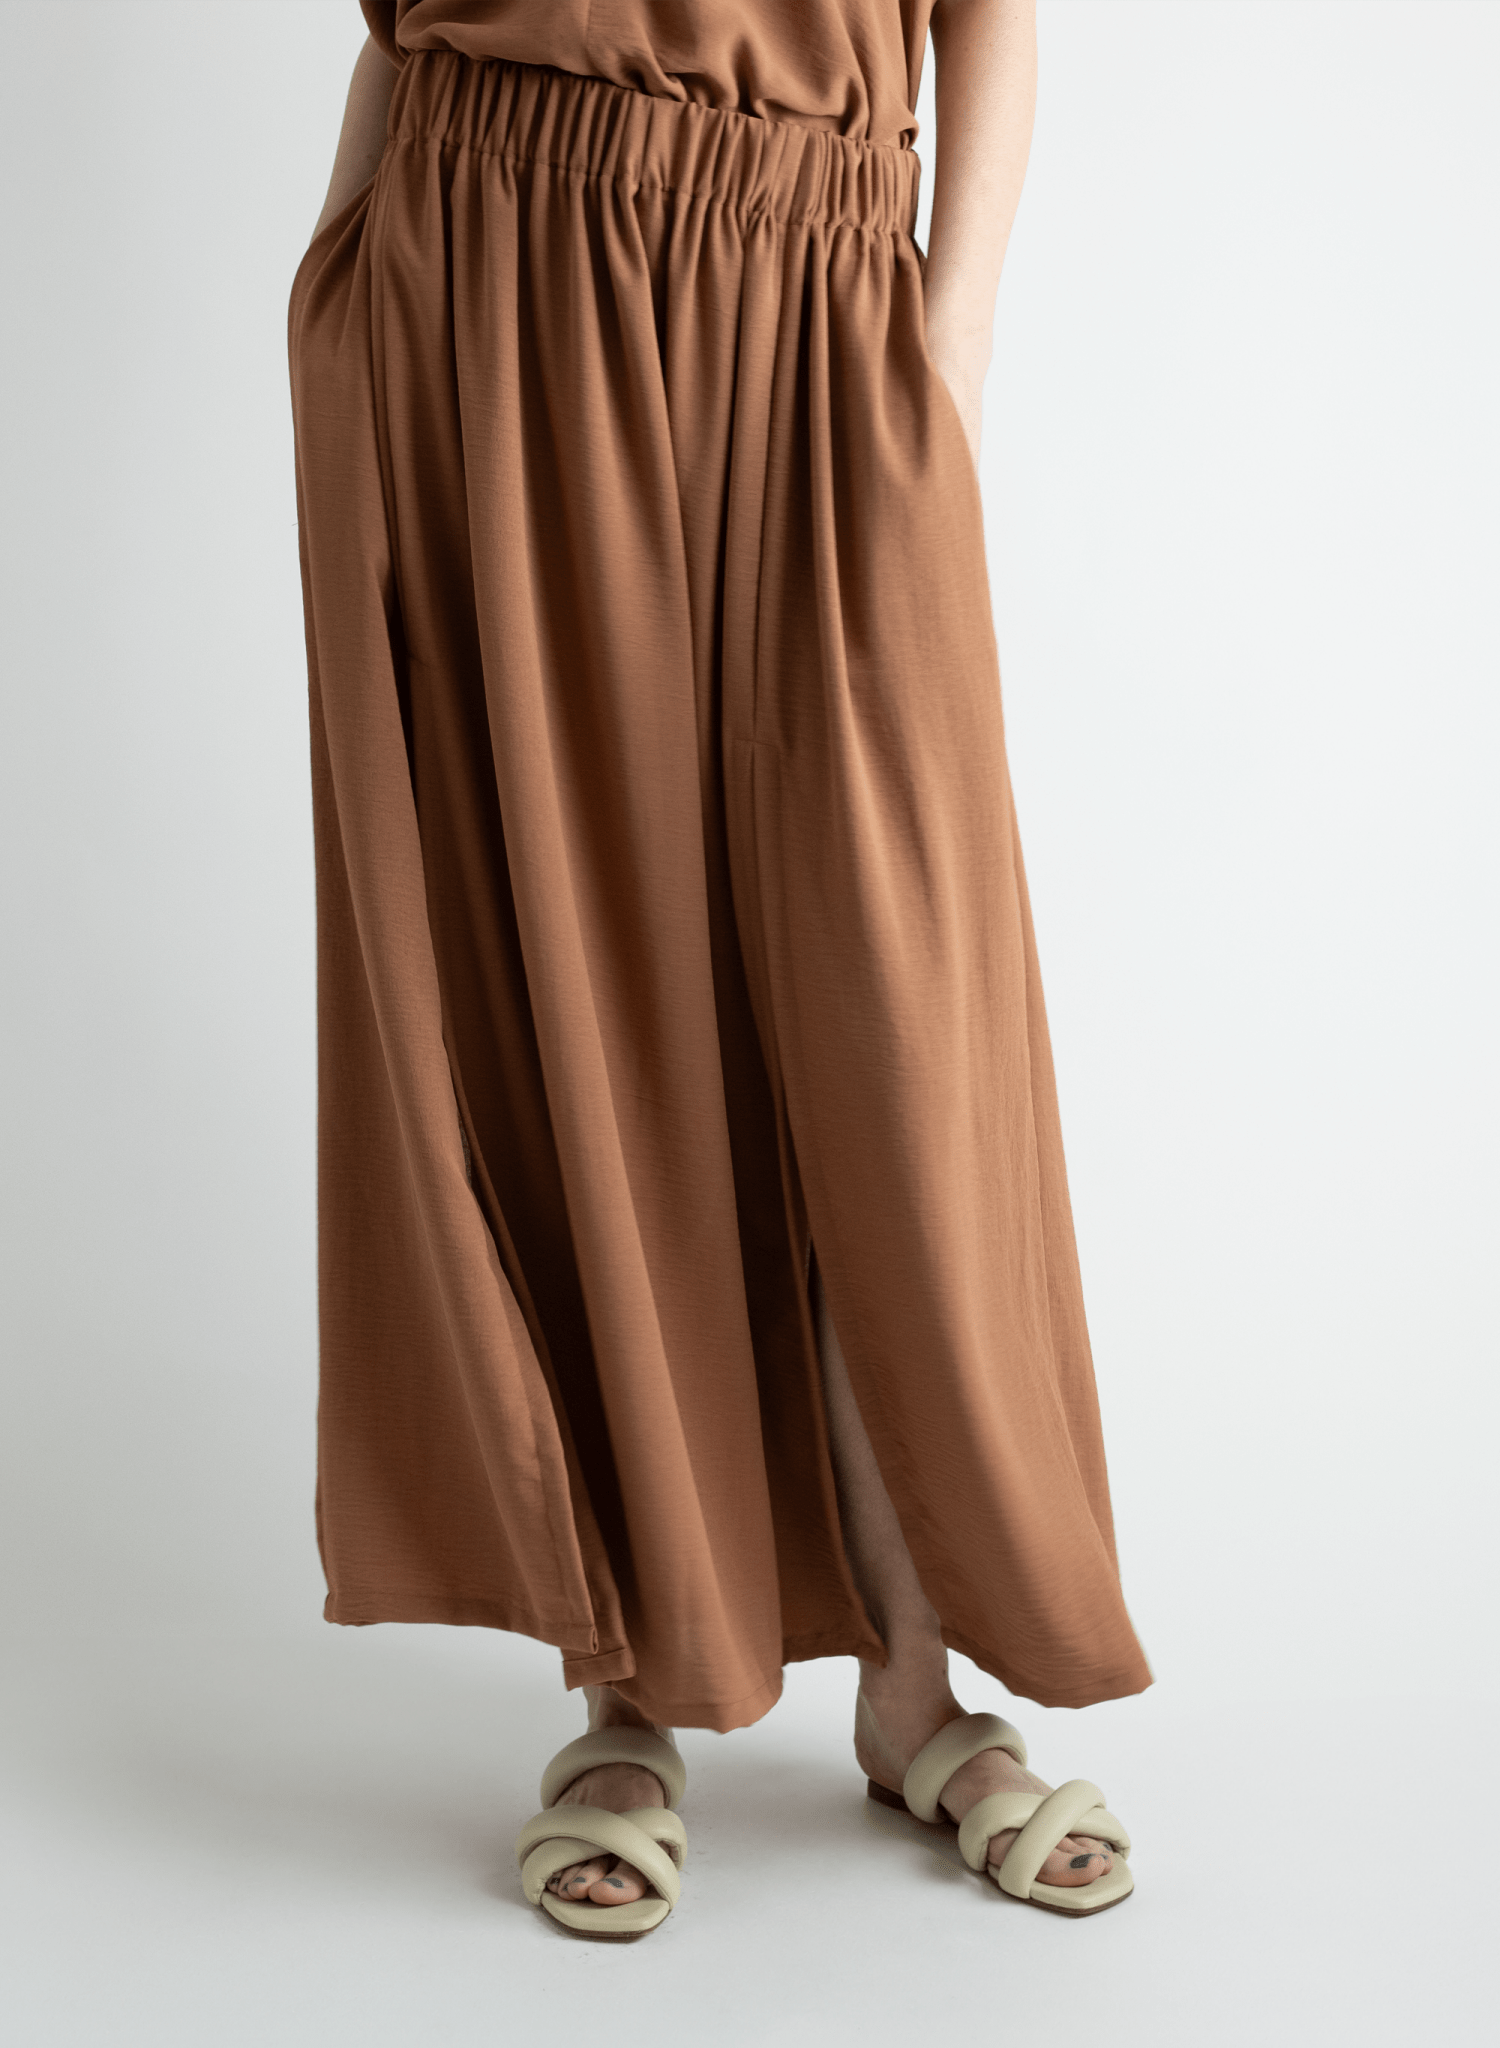 Abstraction Skirt - Latte - Meg Canada